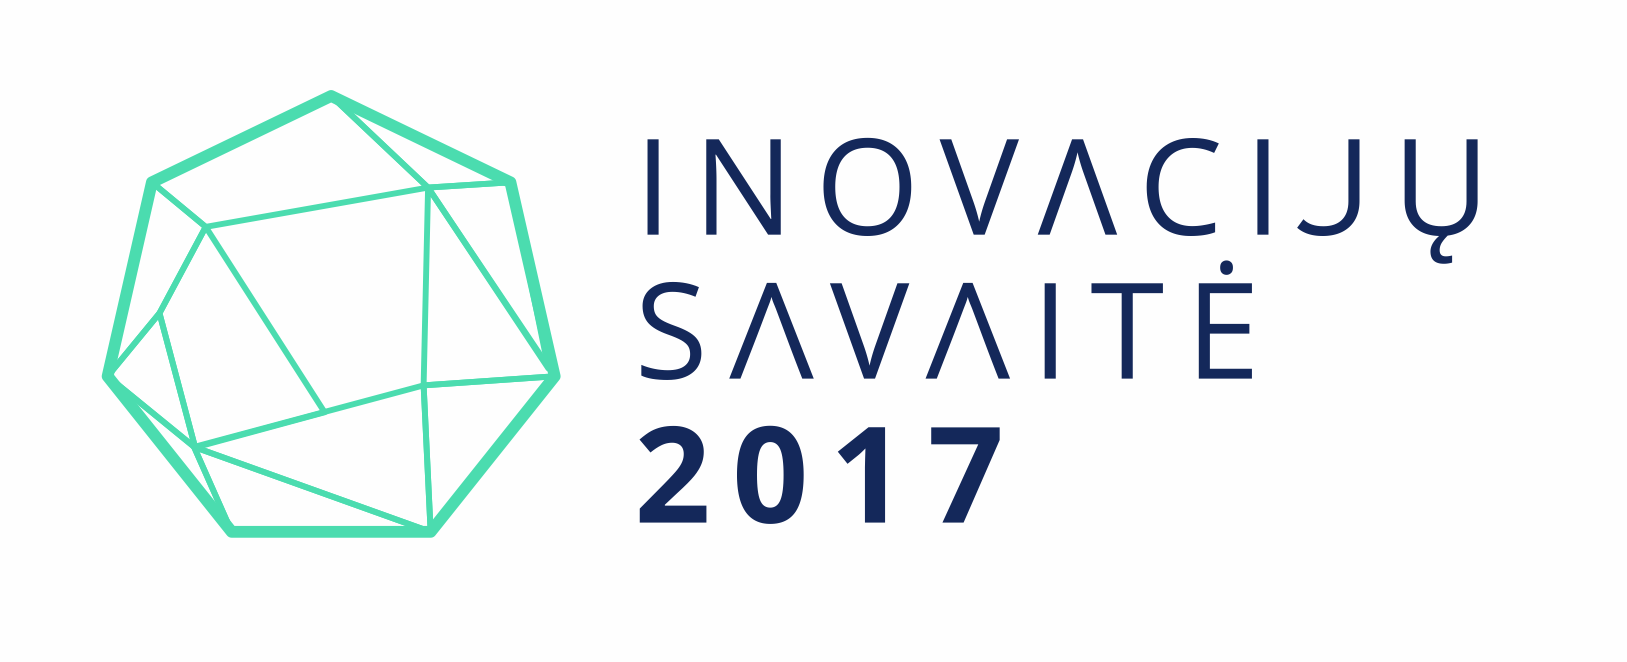 Inovacijų savaitė 2017 logo